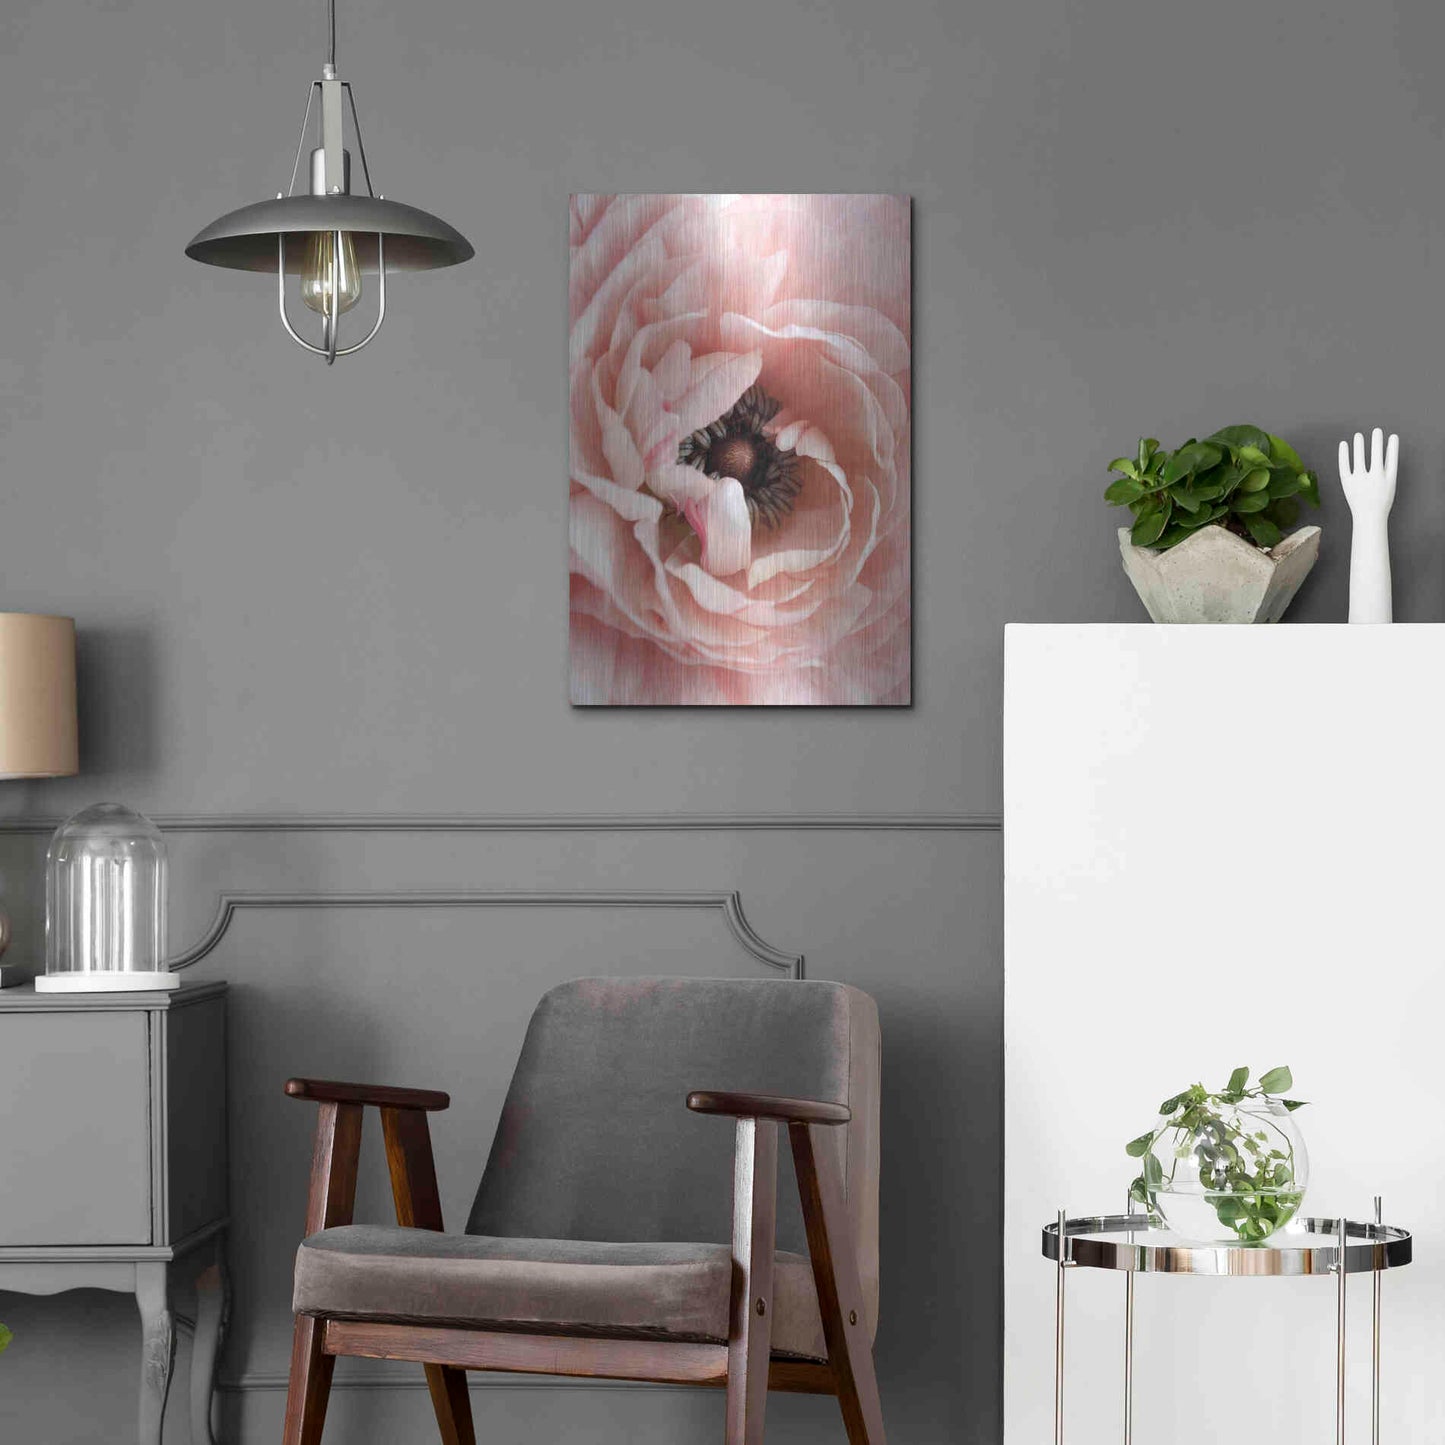 Luxe Metal Art 'Flower' by Design Fabrikken, Metal Wall Art,16x24